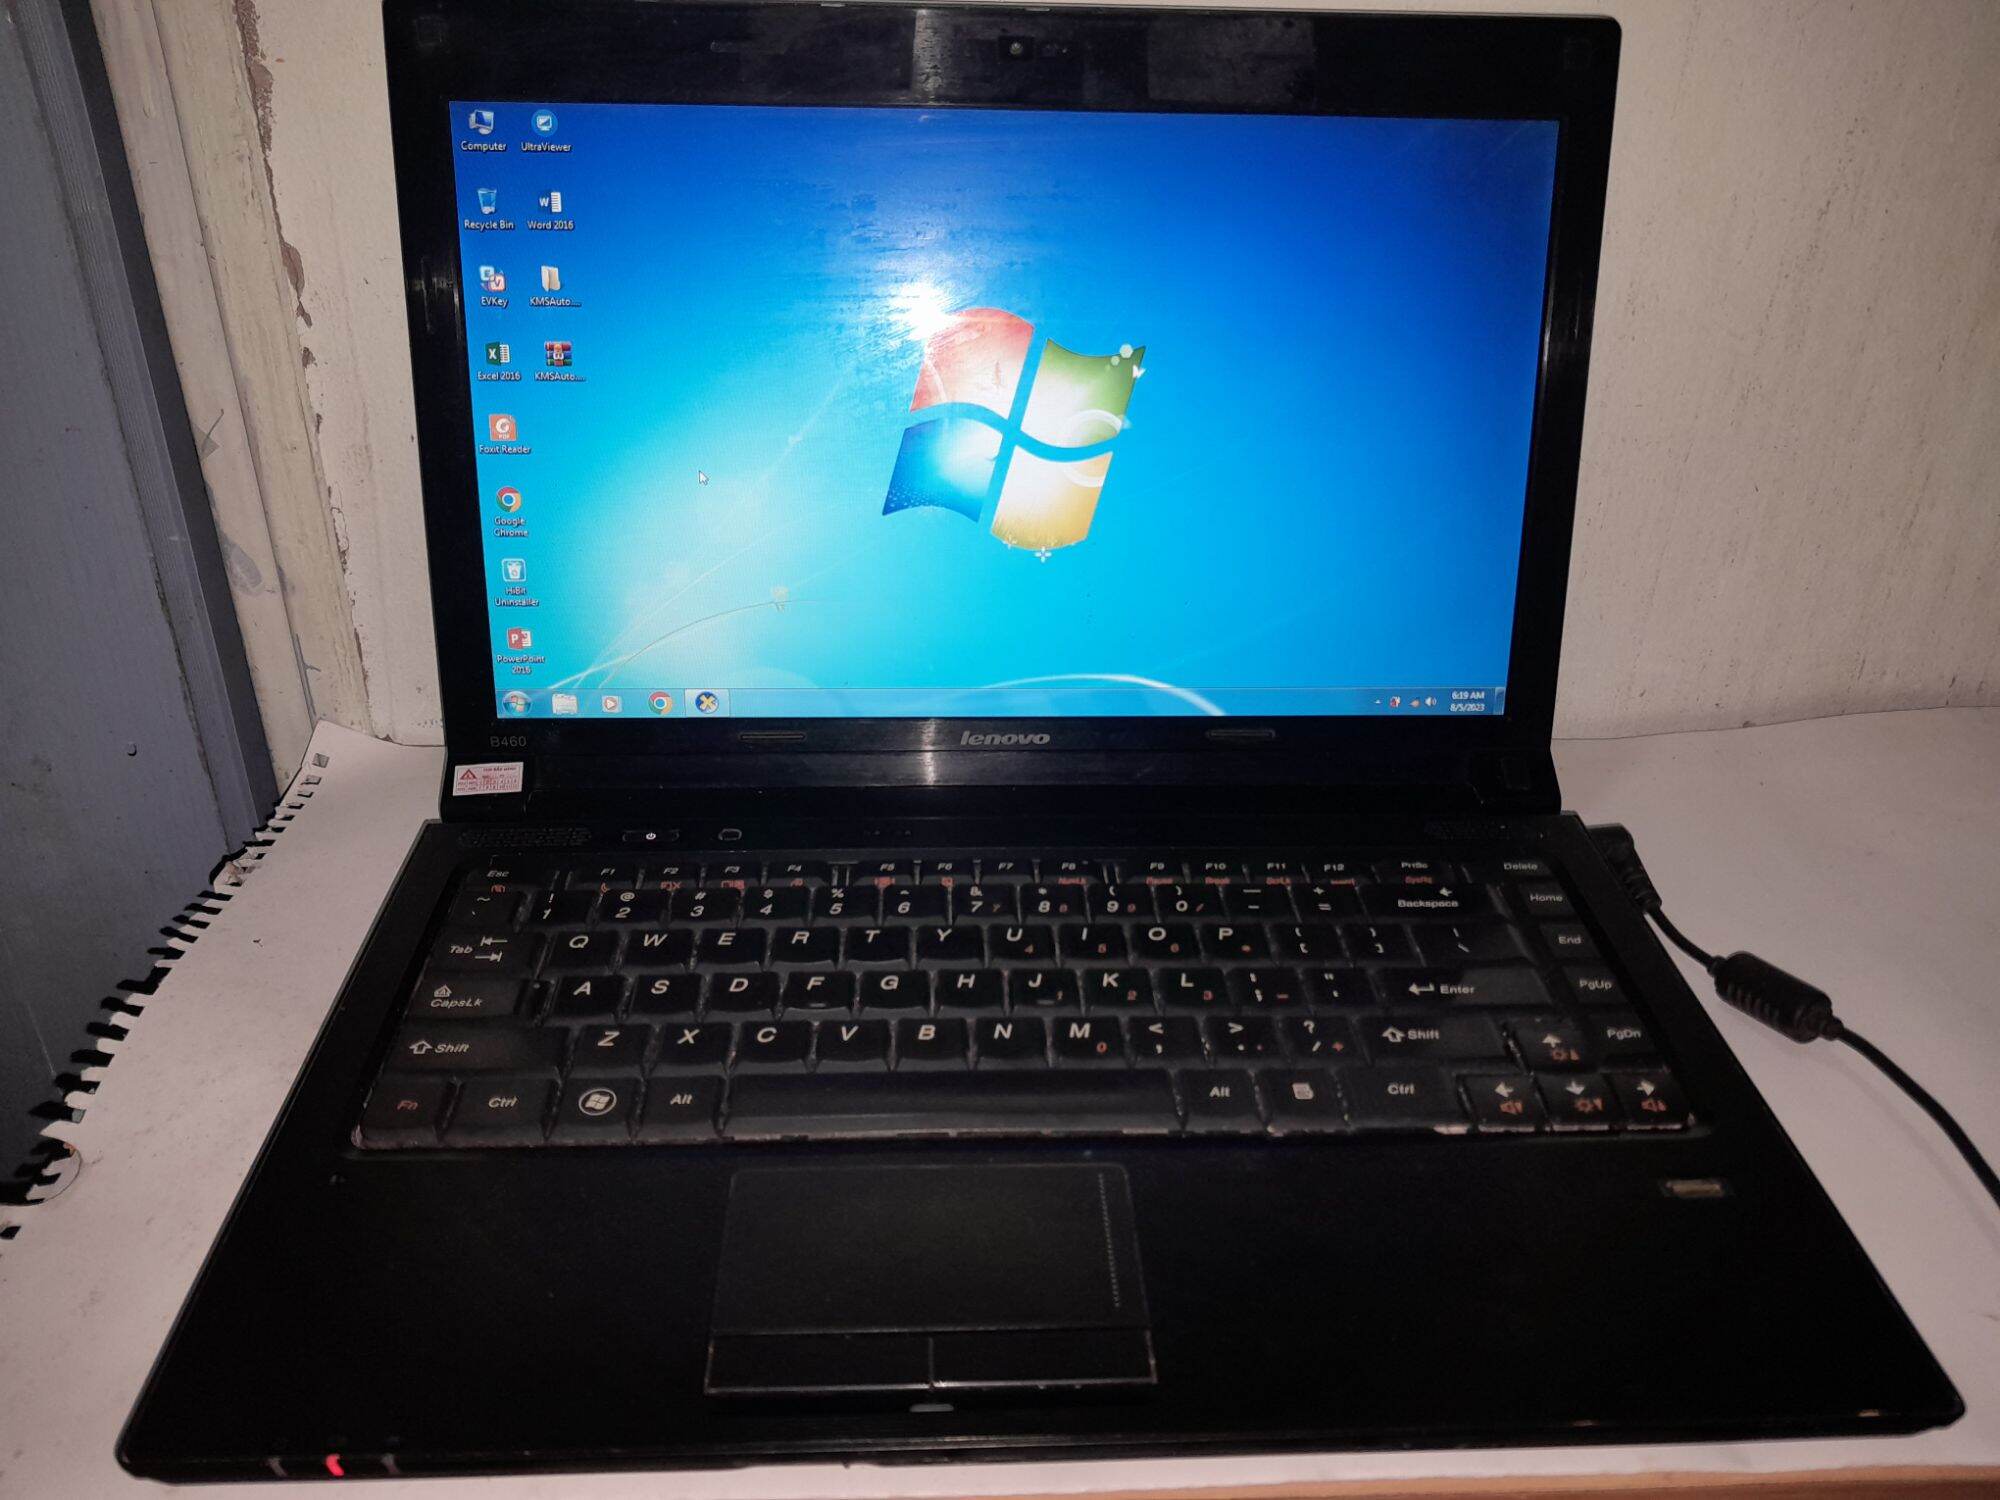 Thanh lý Laptop Lenovo, Pentum (R), ram 4 gb, Giá bán 1,2 triệu